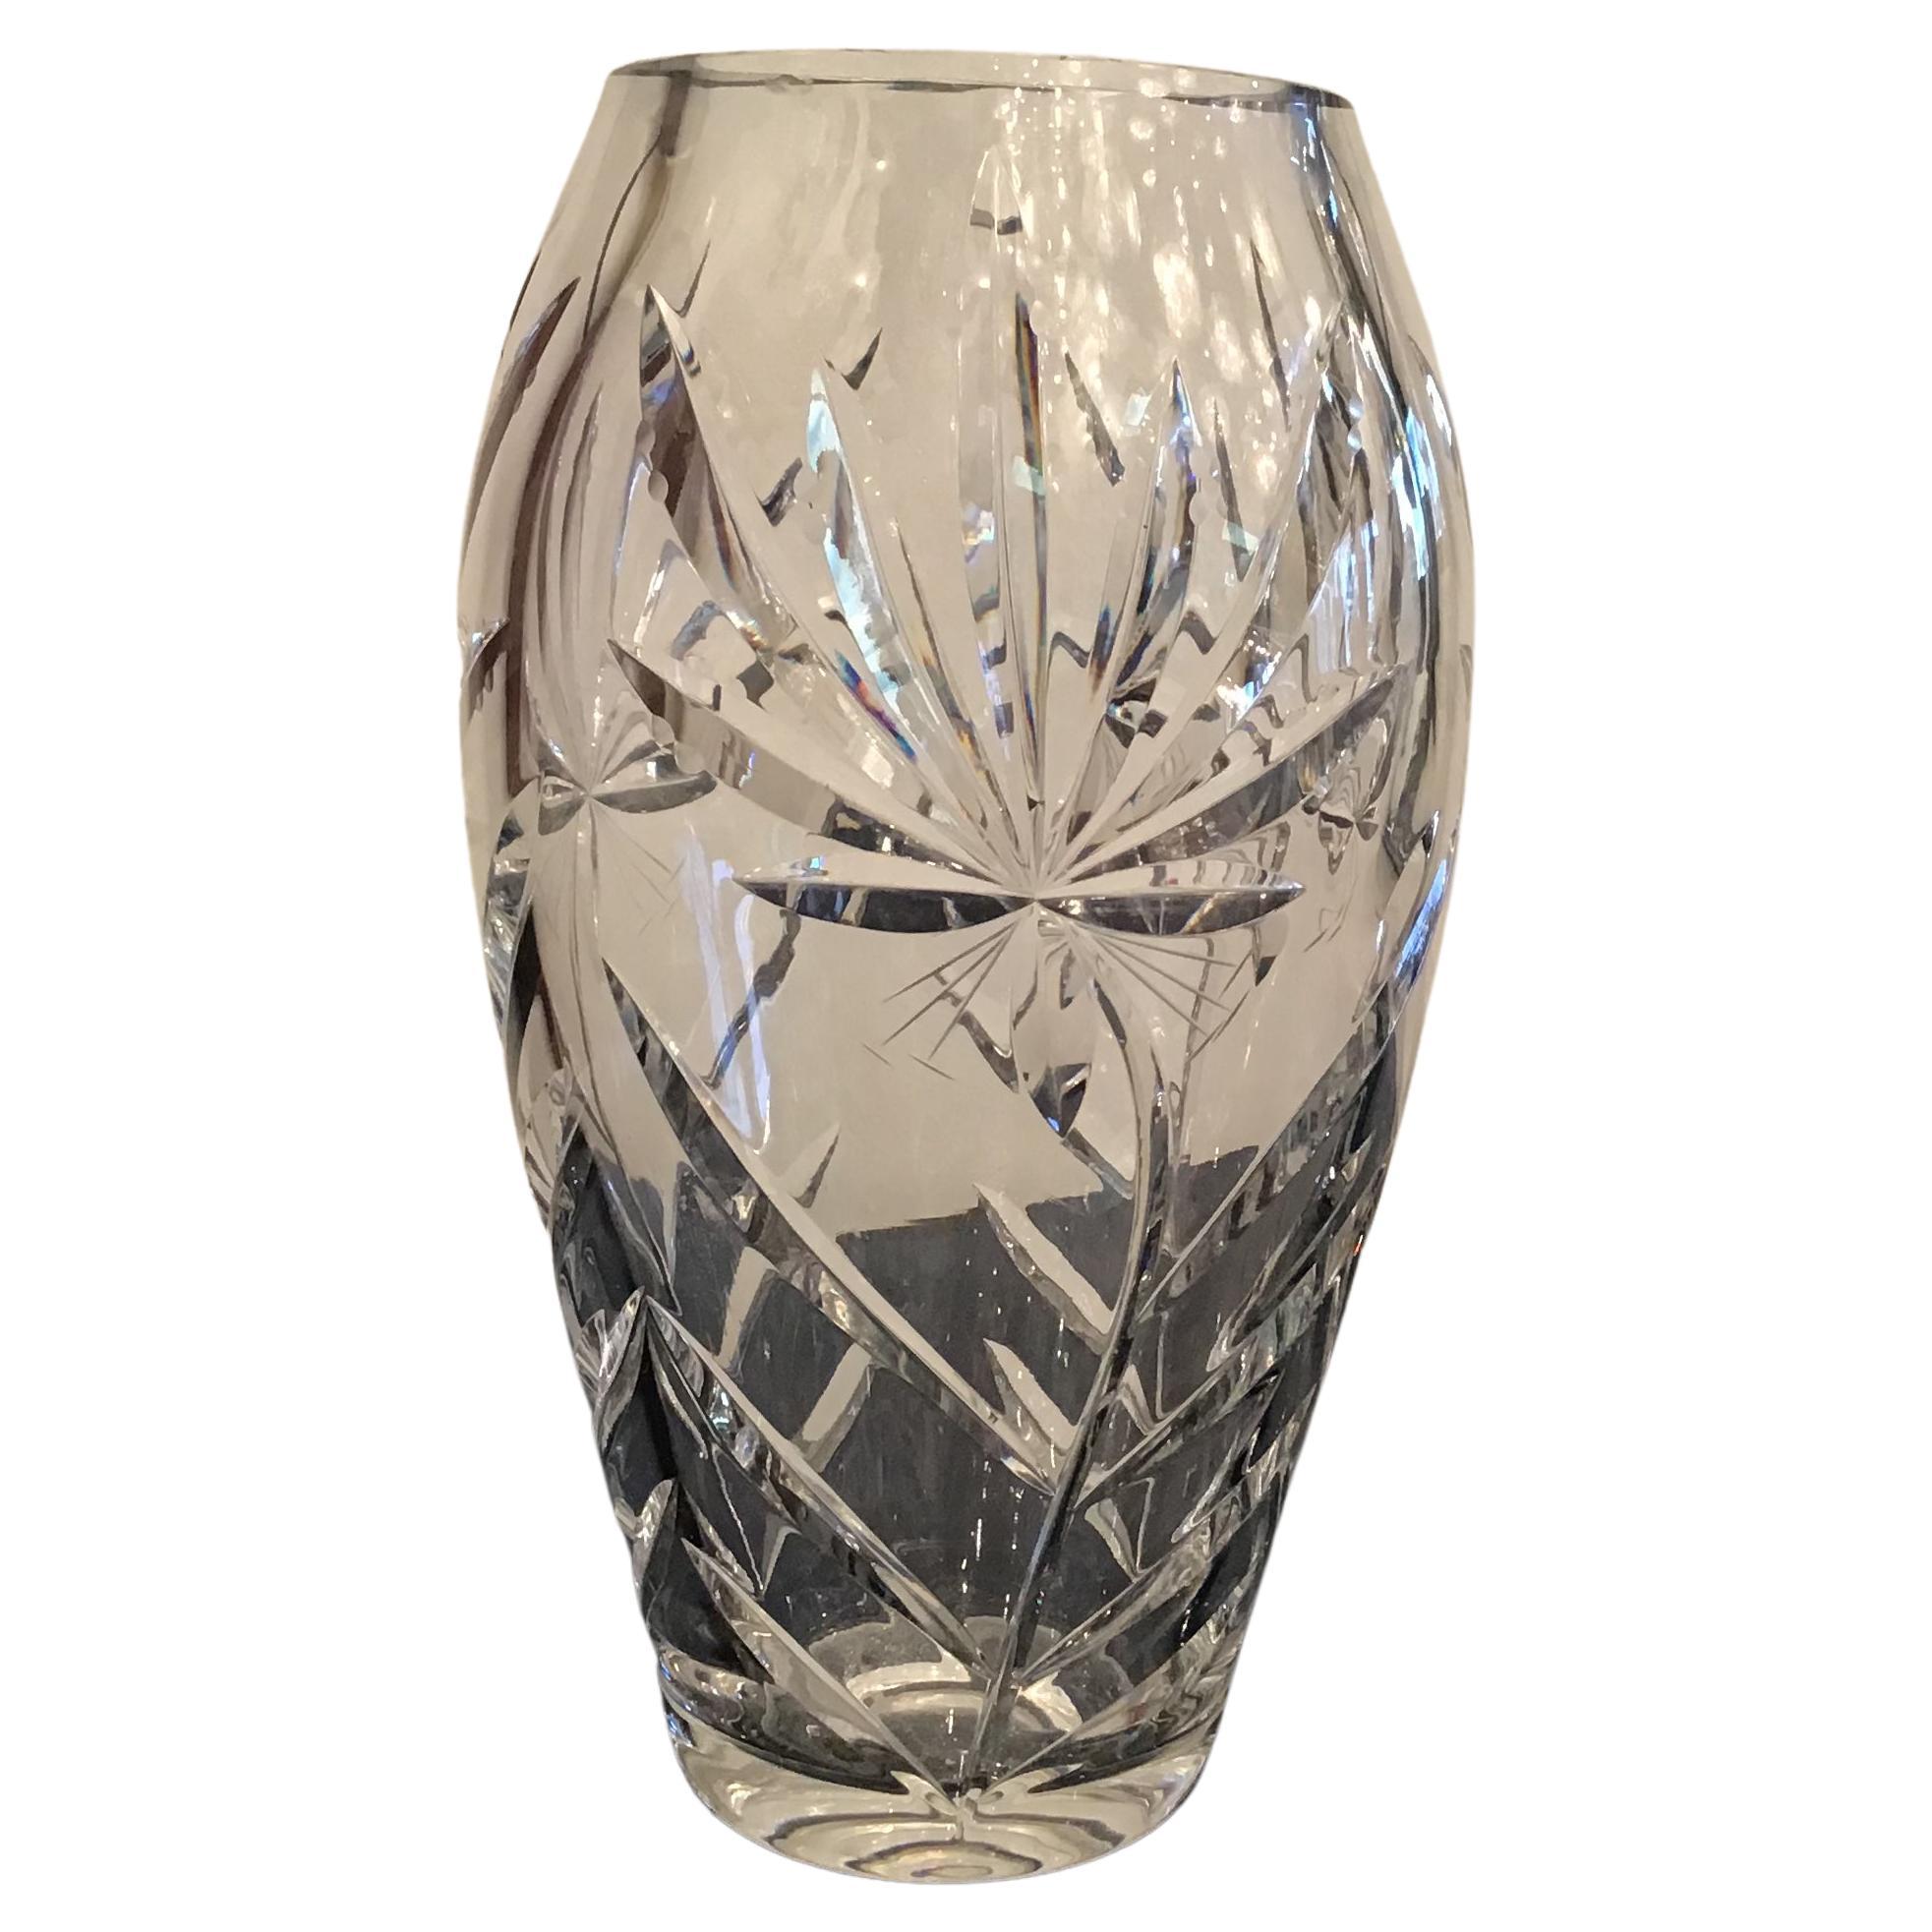 Boemia-Vase aus Bleikristall 1940 Repubblica Ceca